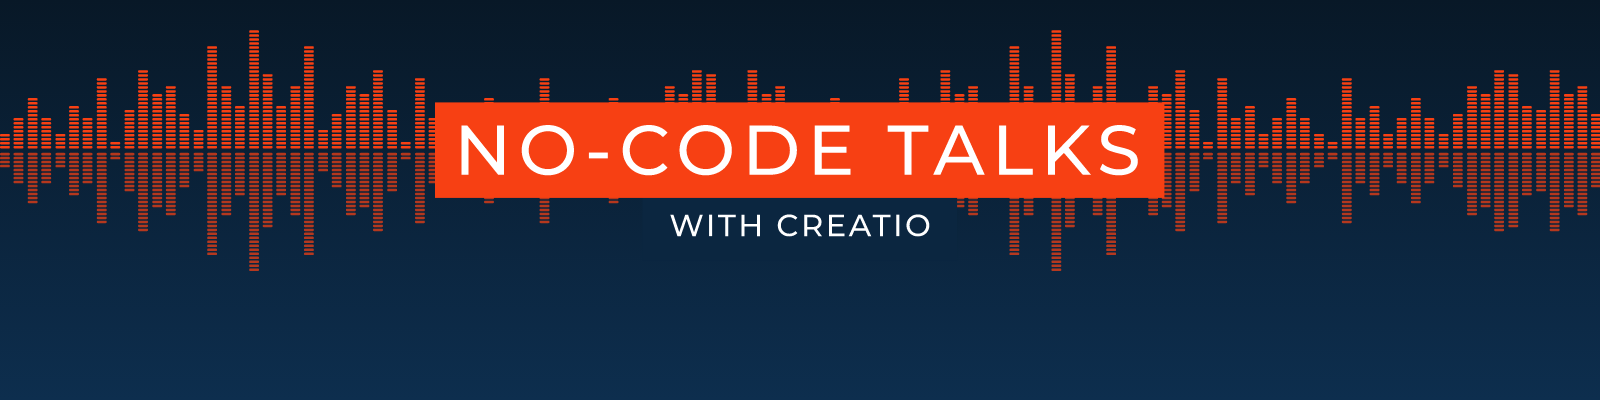 No-Code Talks with Creatio